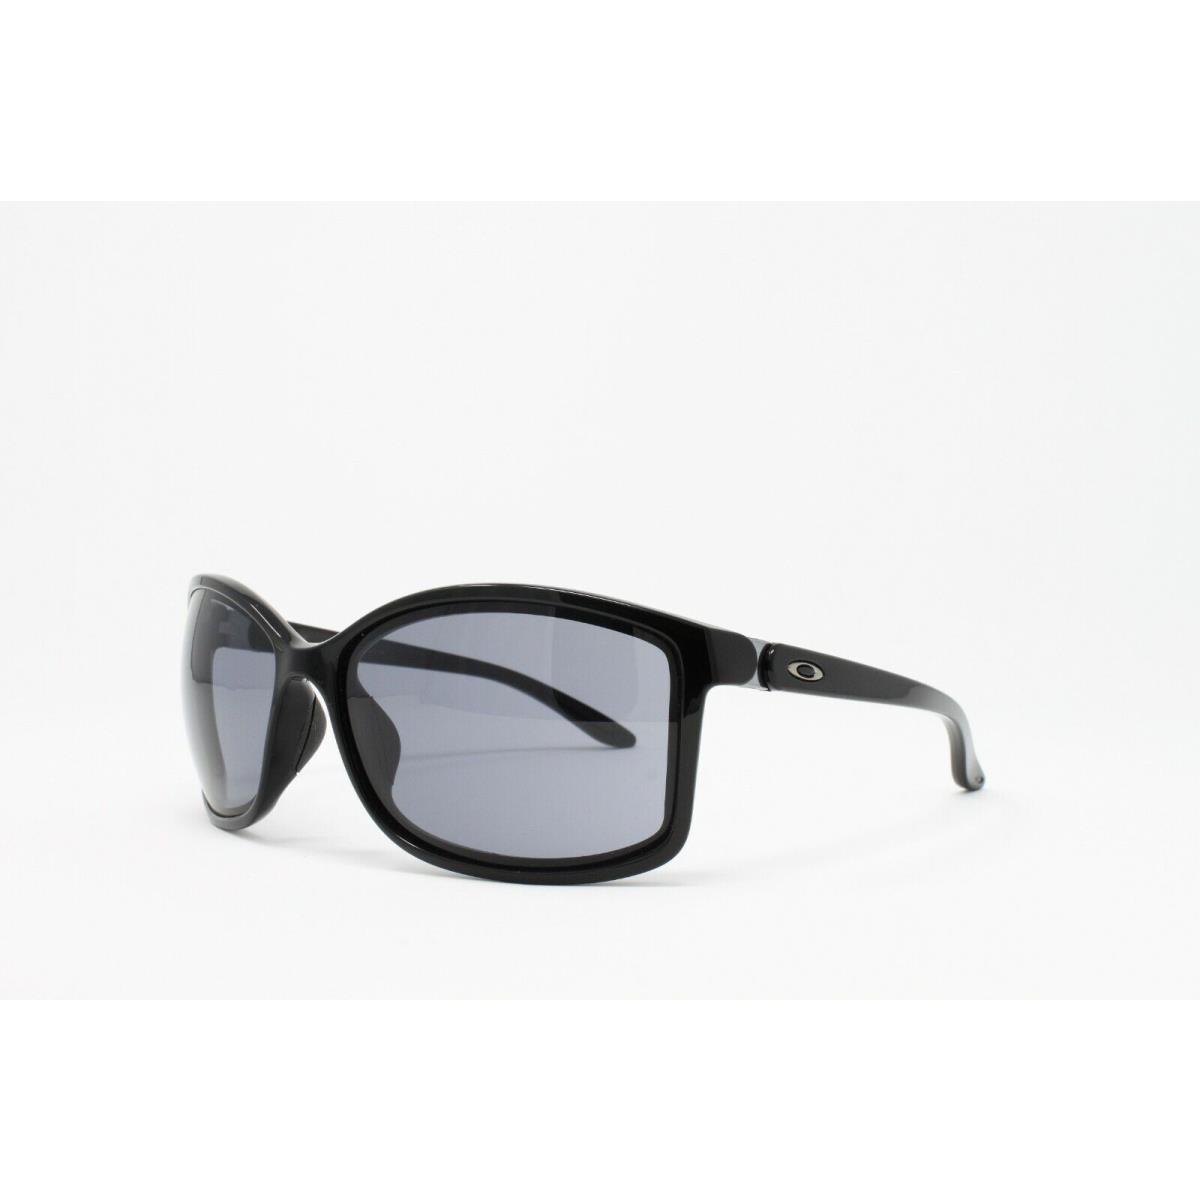 Oakley sunglasses  - Black Frame, Gray Lens 1